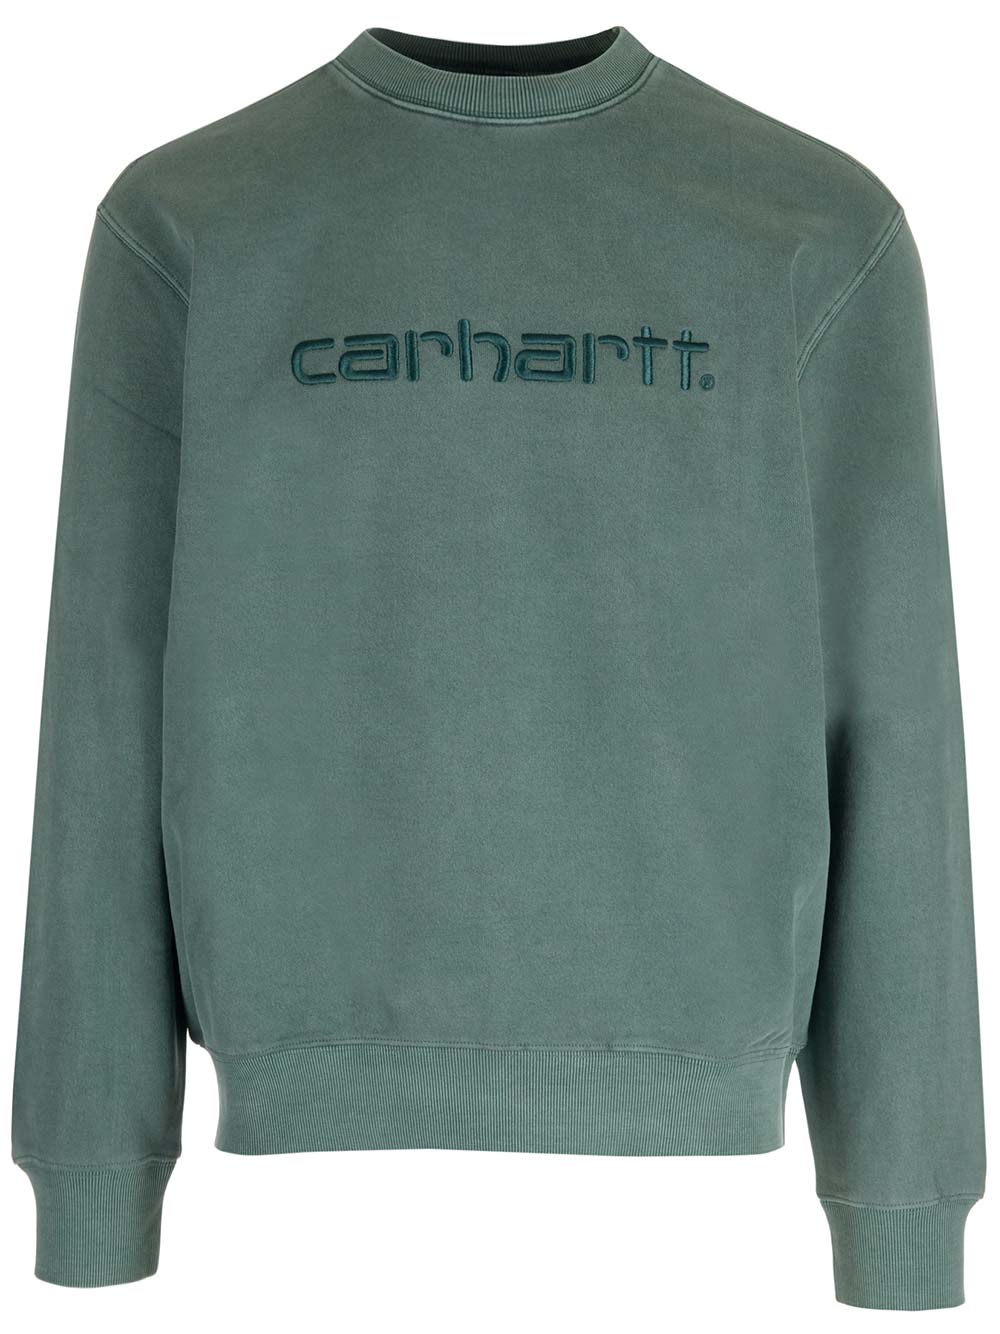 Carhartt Green Logo Sweatshirt